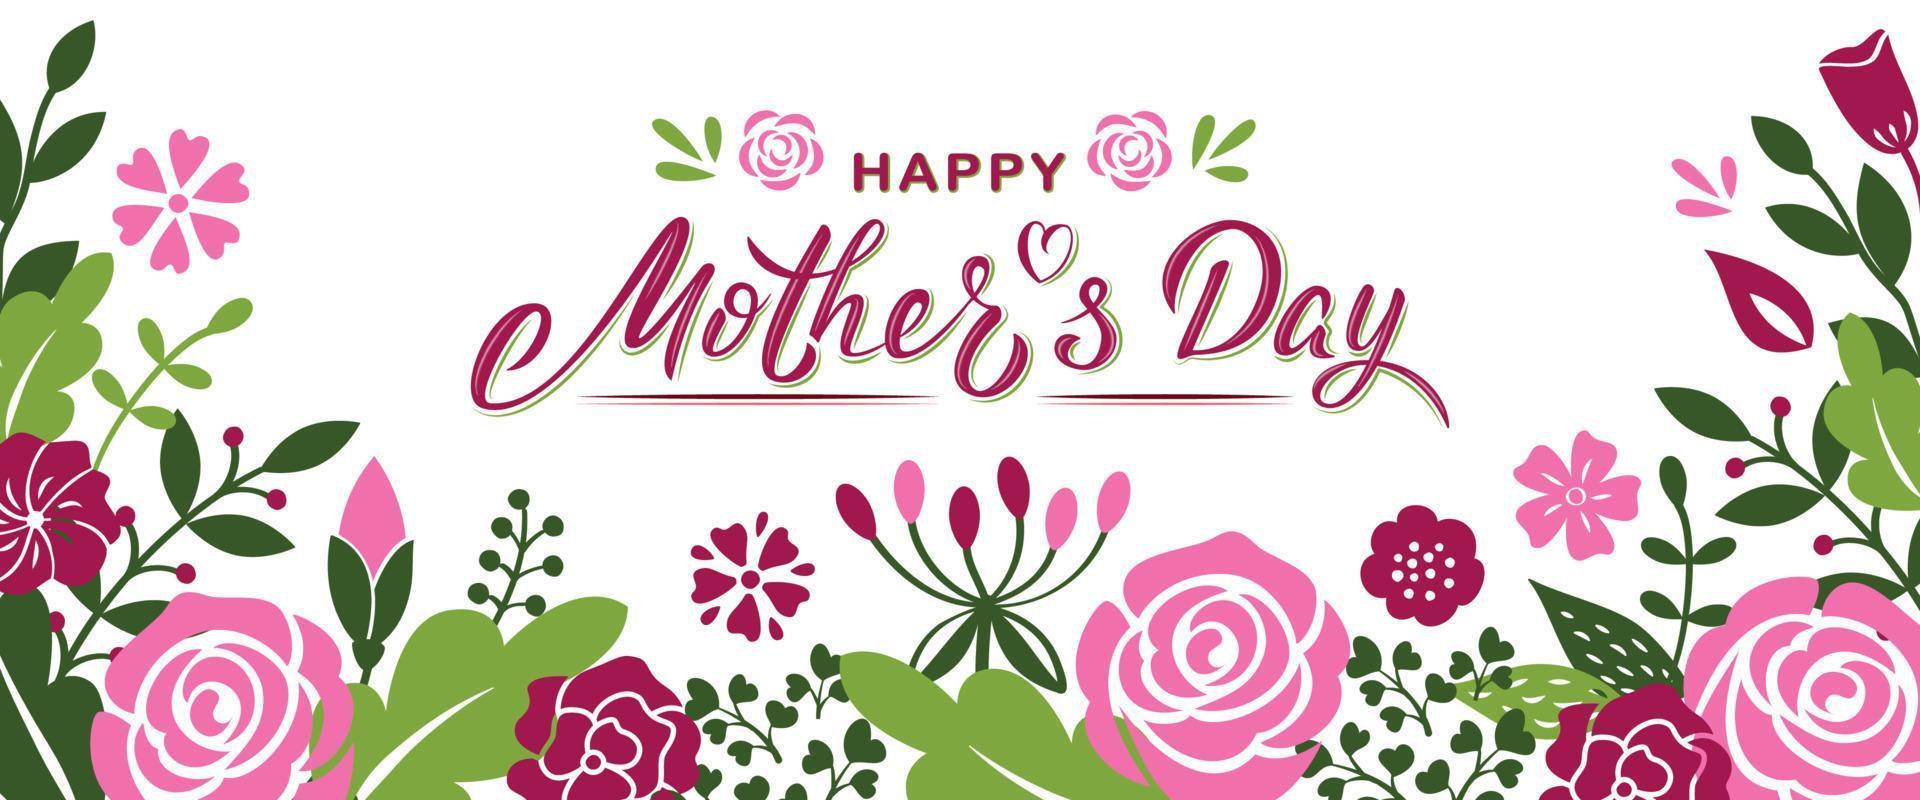 gelukkige moederdag hand belettering tekst met bloemen en takken. sjabloon voor spandoek voor moederdag. vector